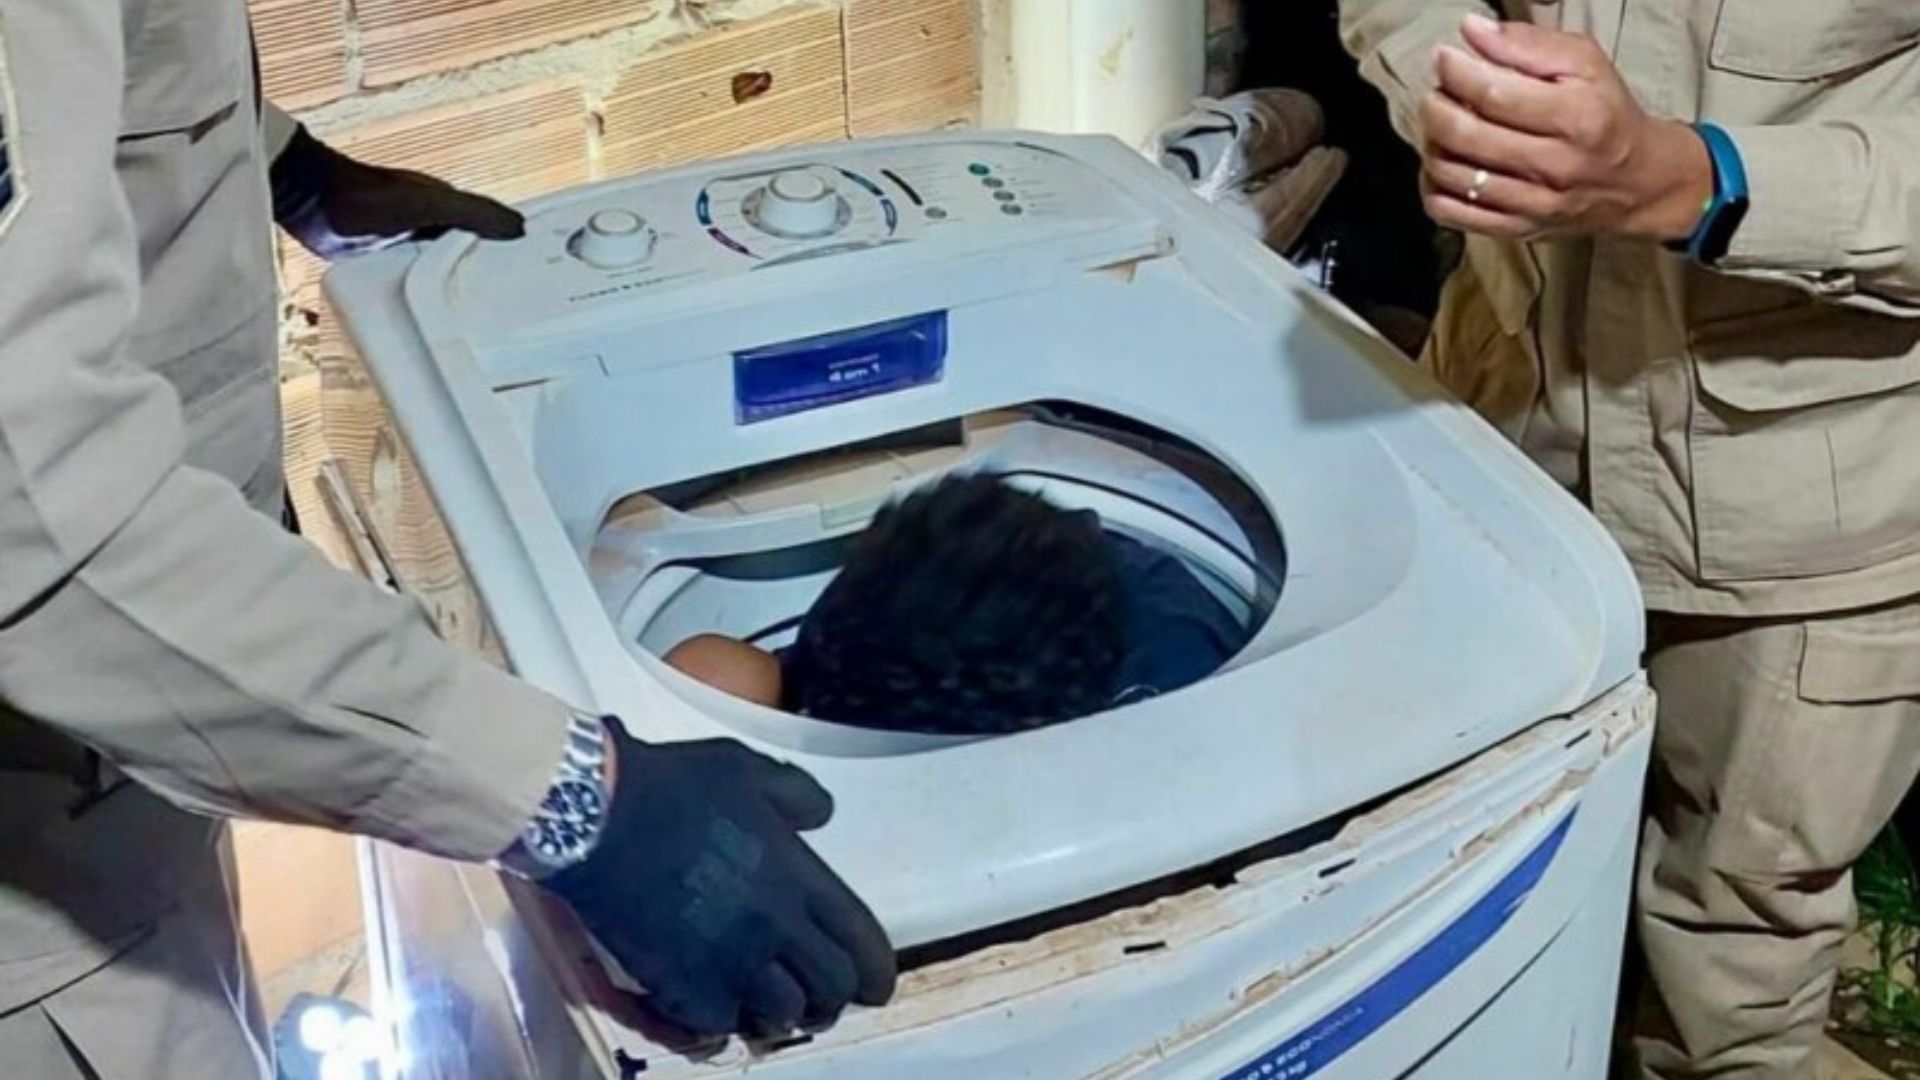 Criança em máquina de lavar 